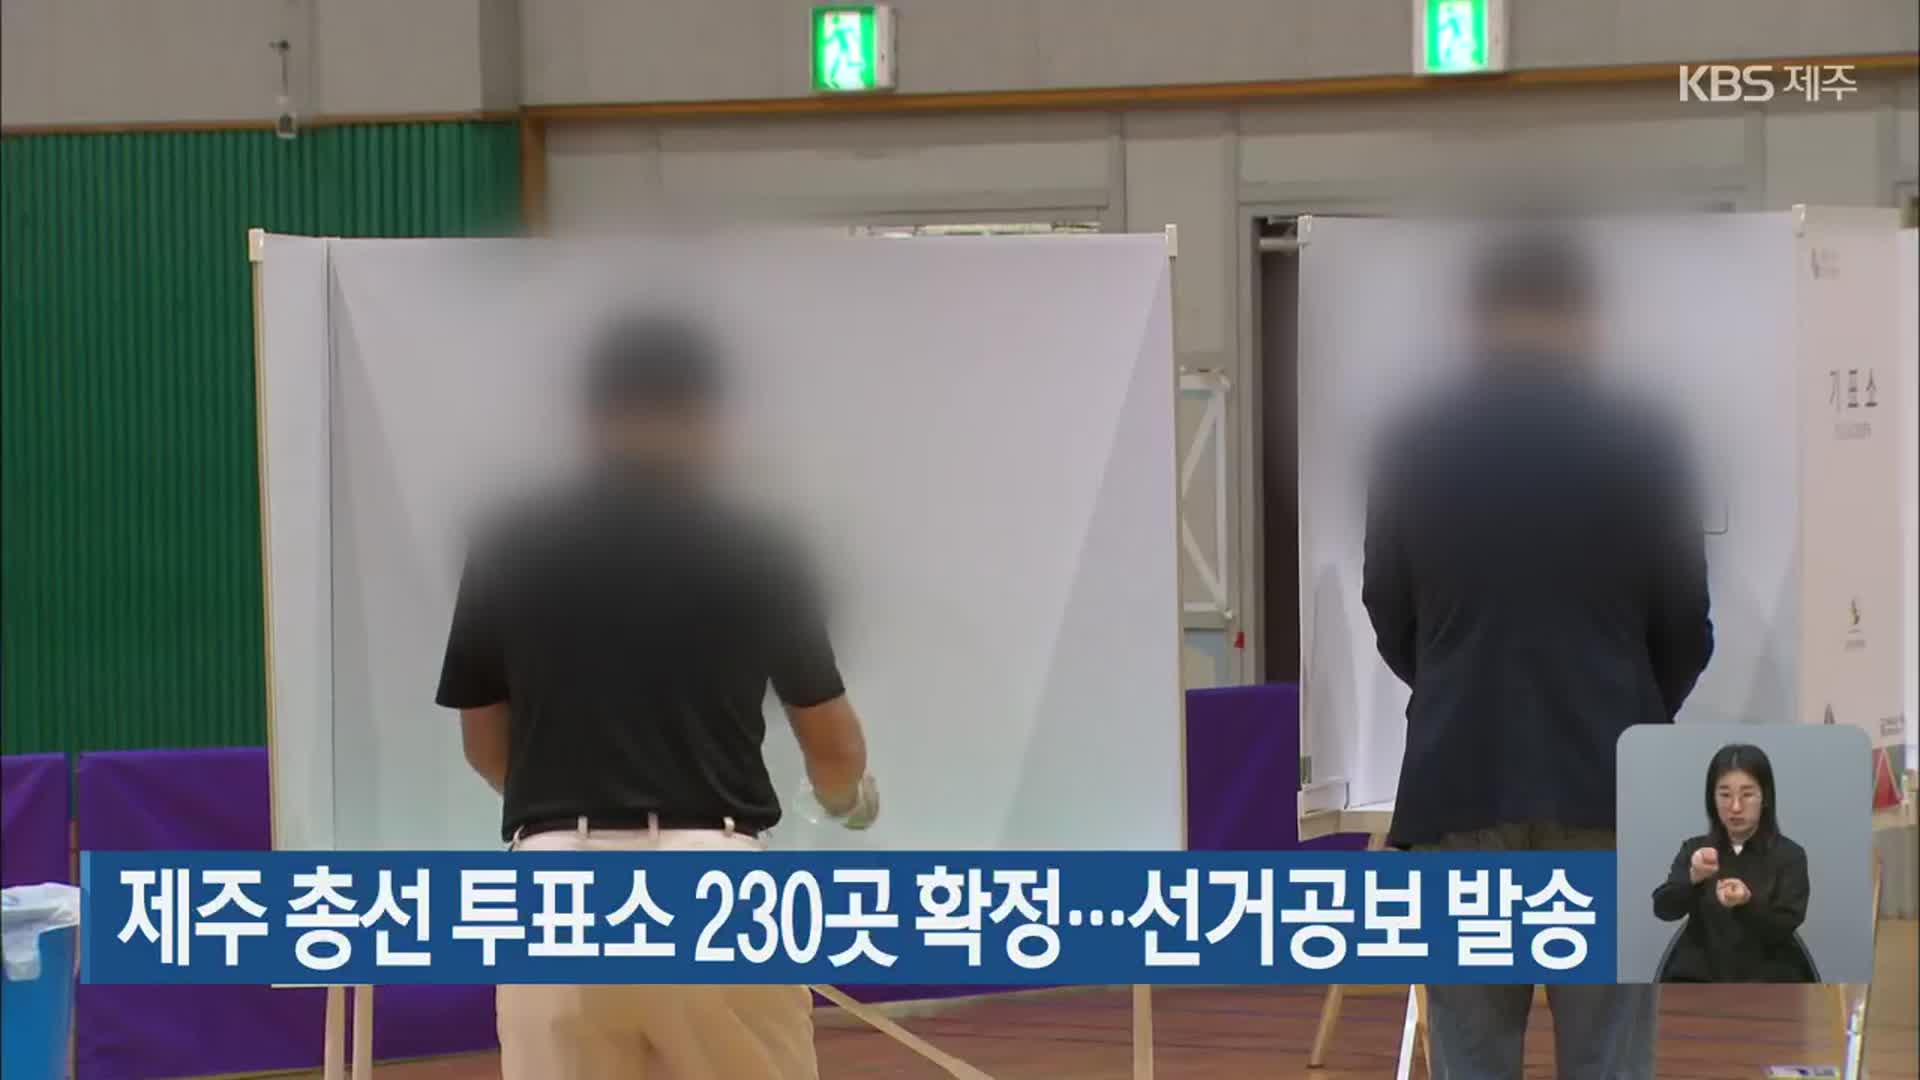 제주 총선 투표소 230곳 확정…선거공보 발송